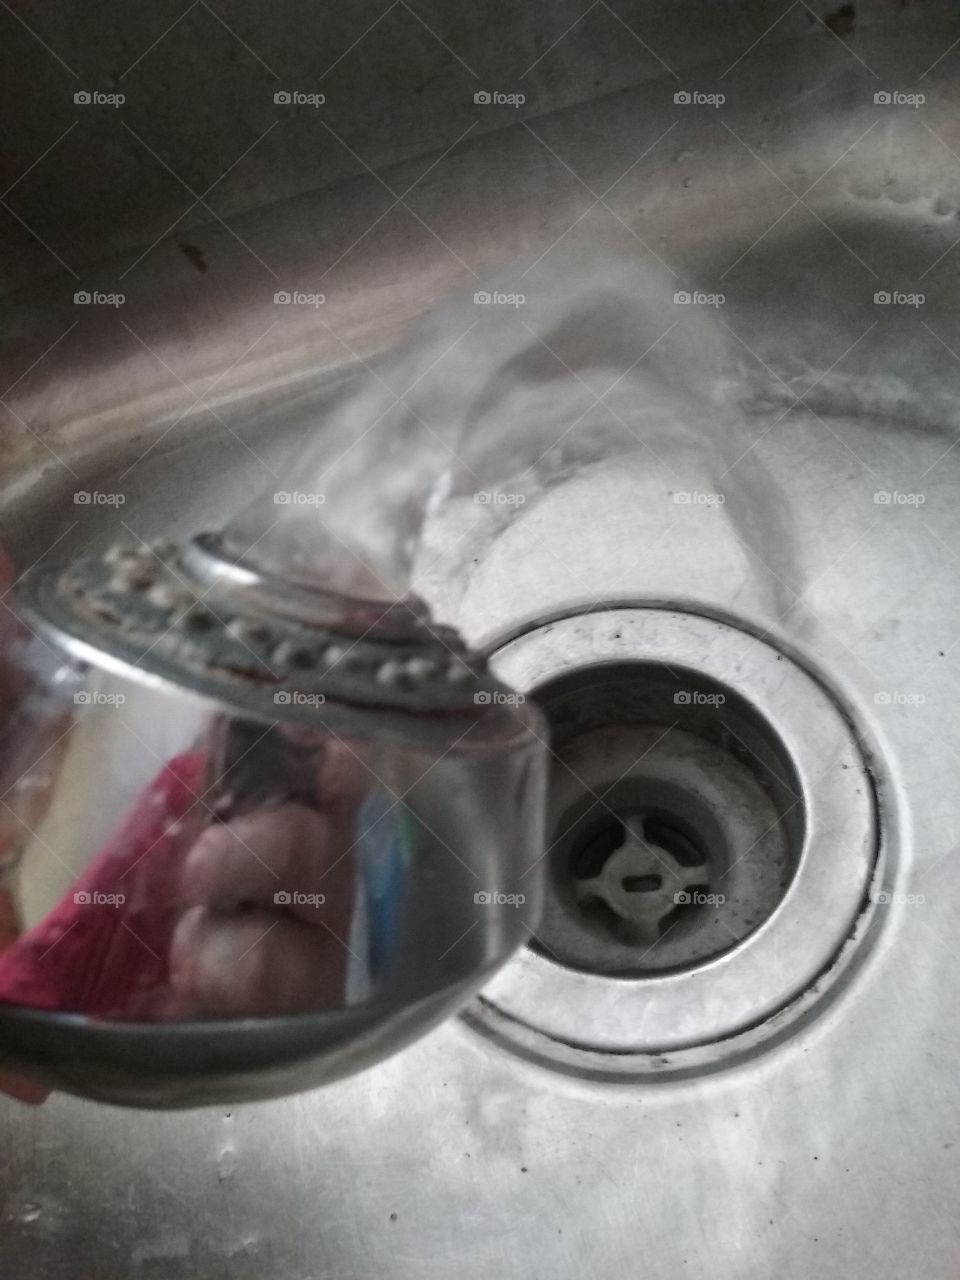 Broken sink